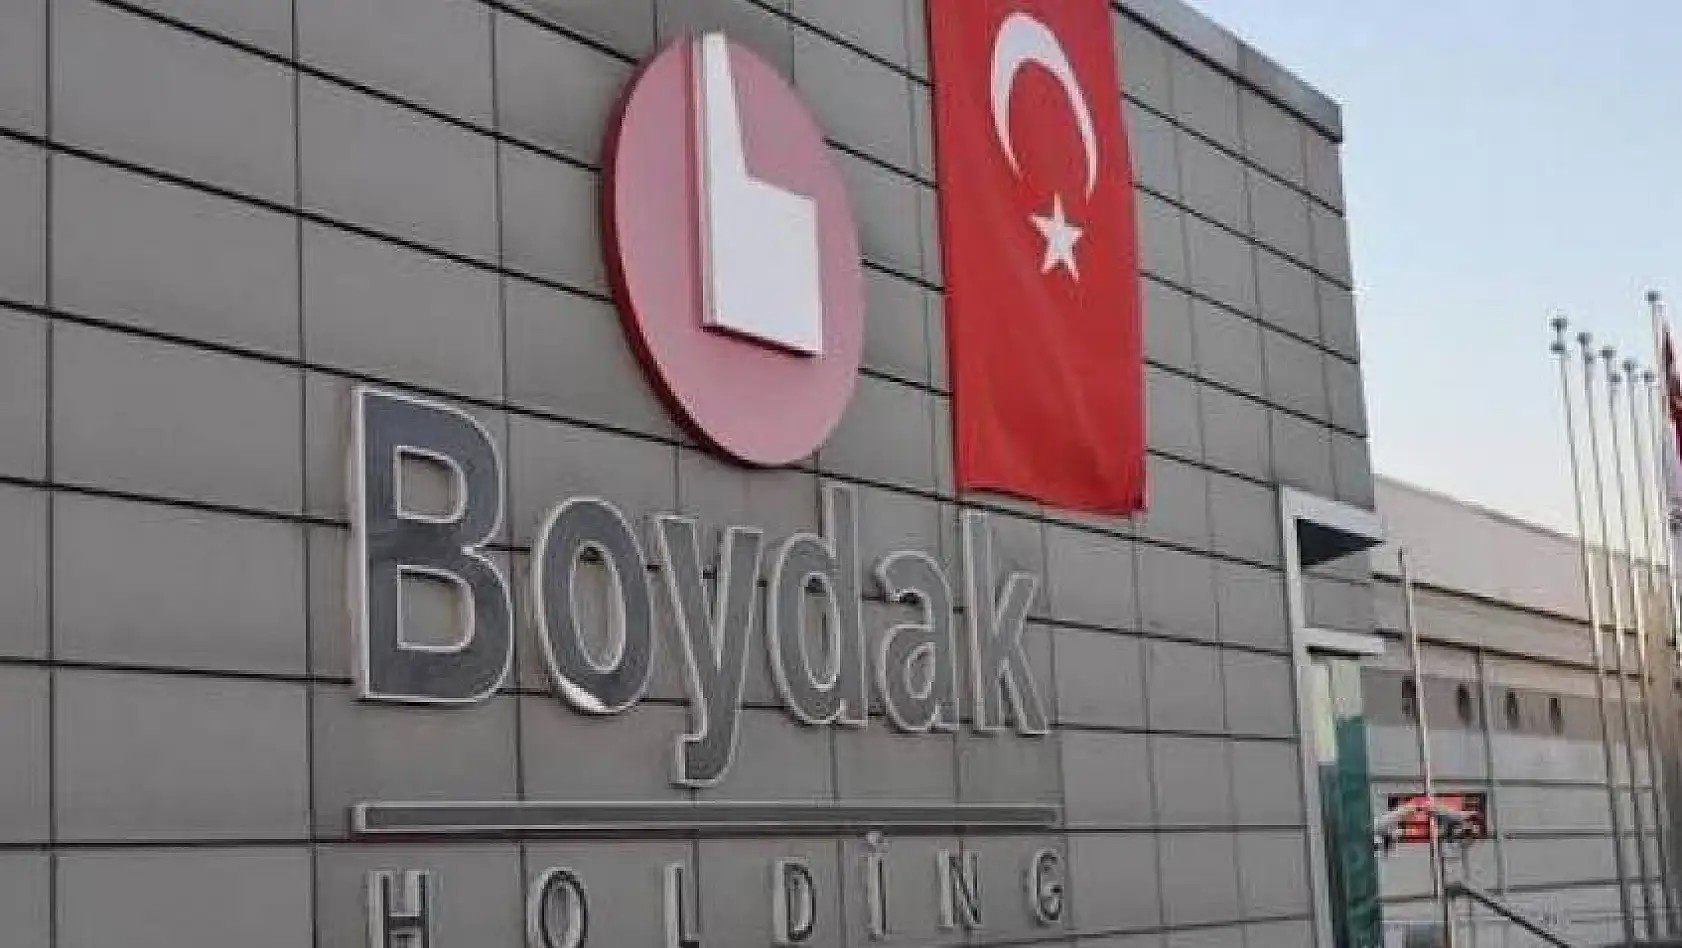 Boydak Holding Yönetiminde şok değişiklik